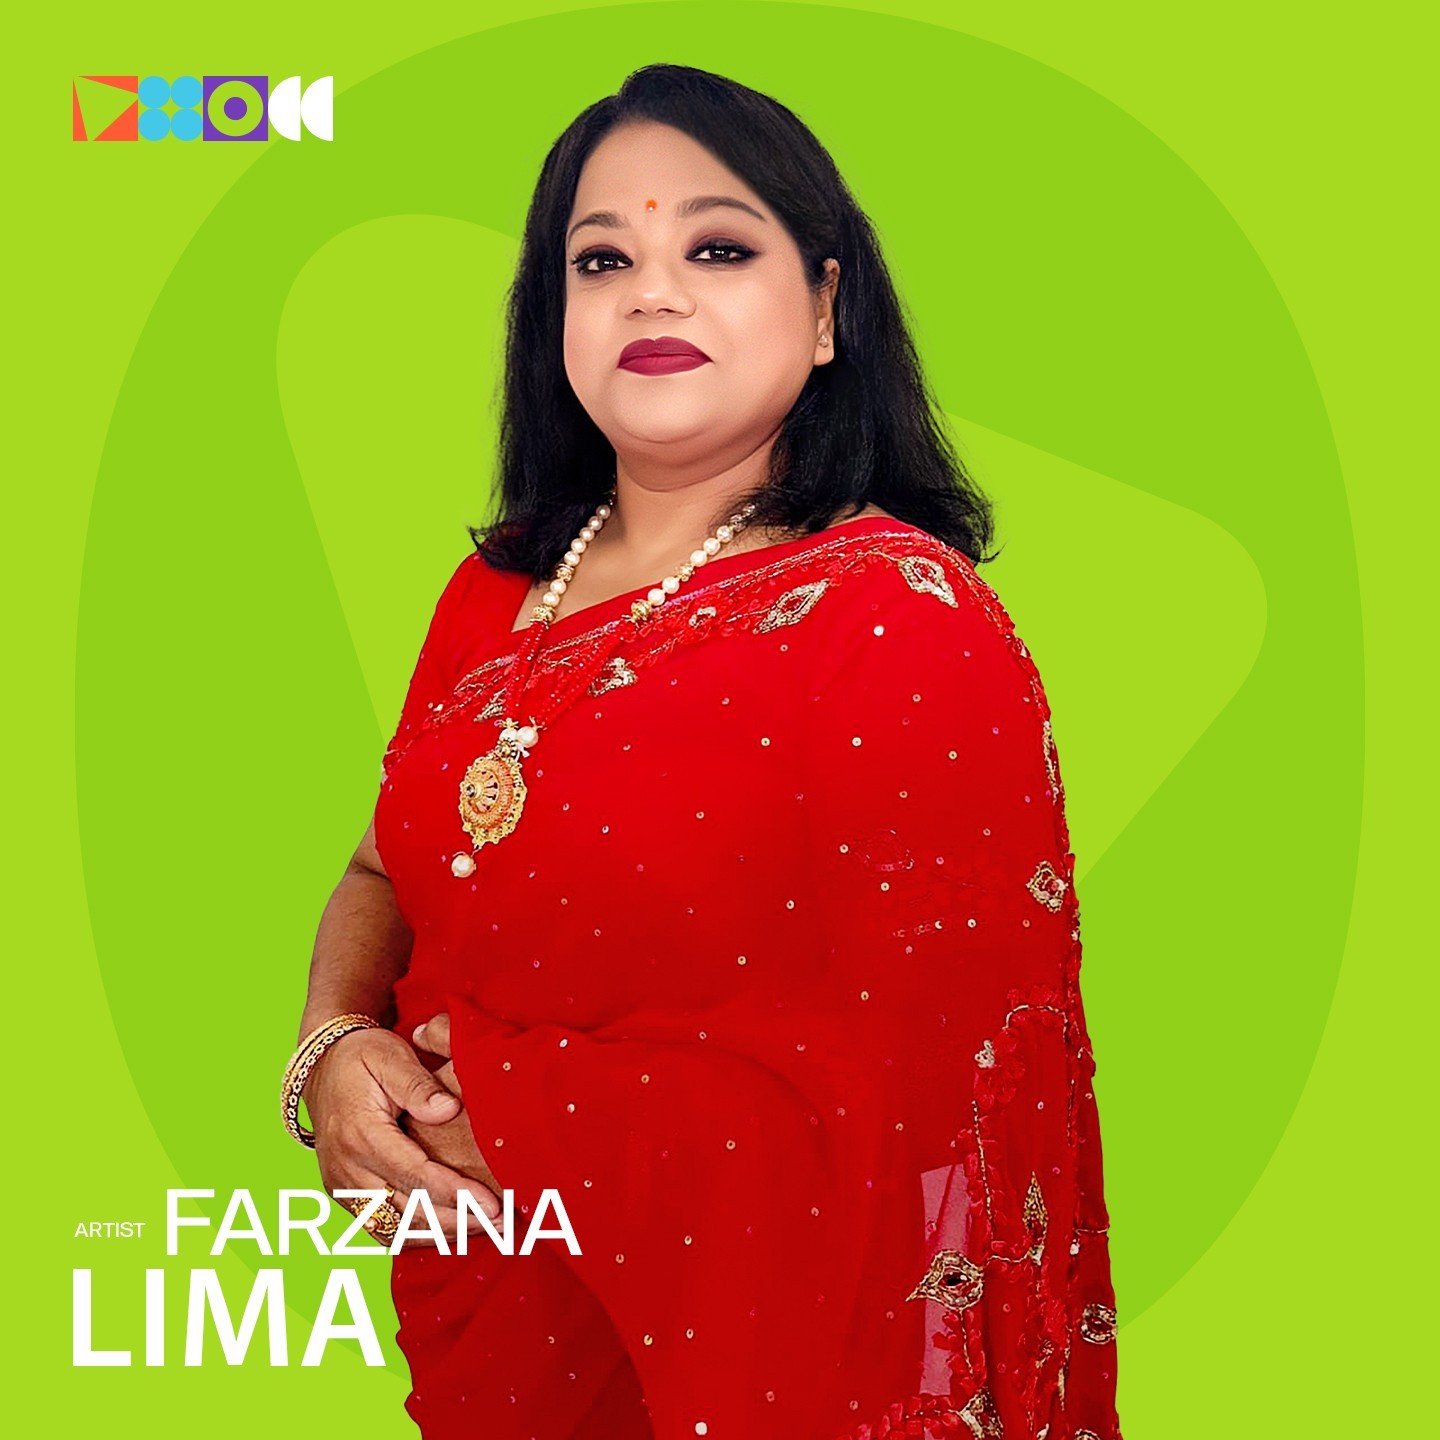 Farzana Lima